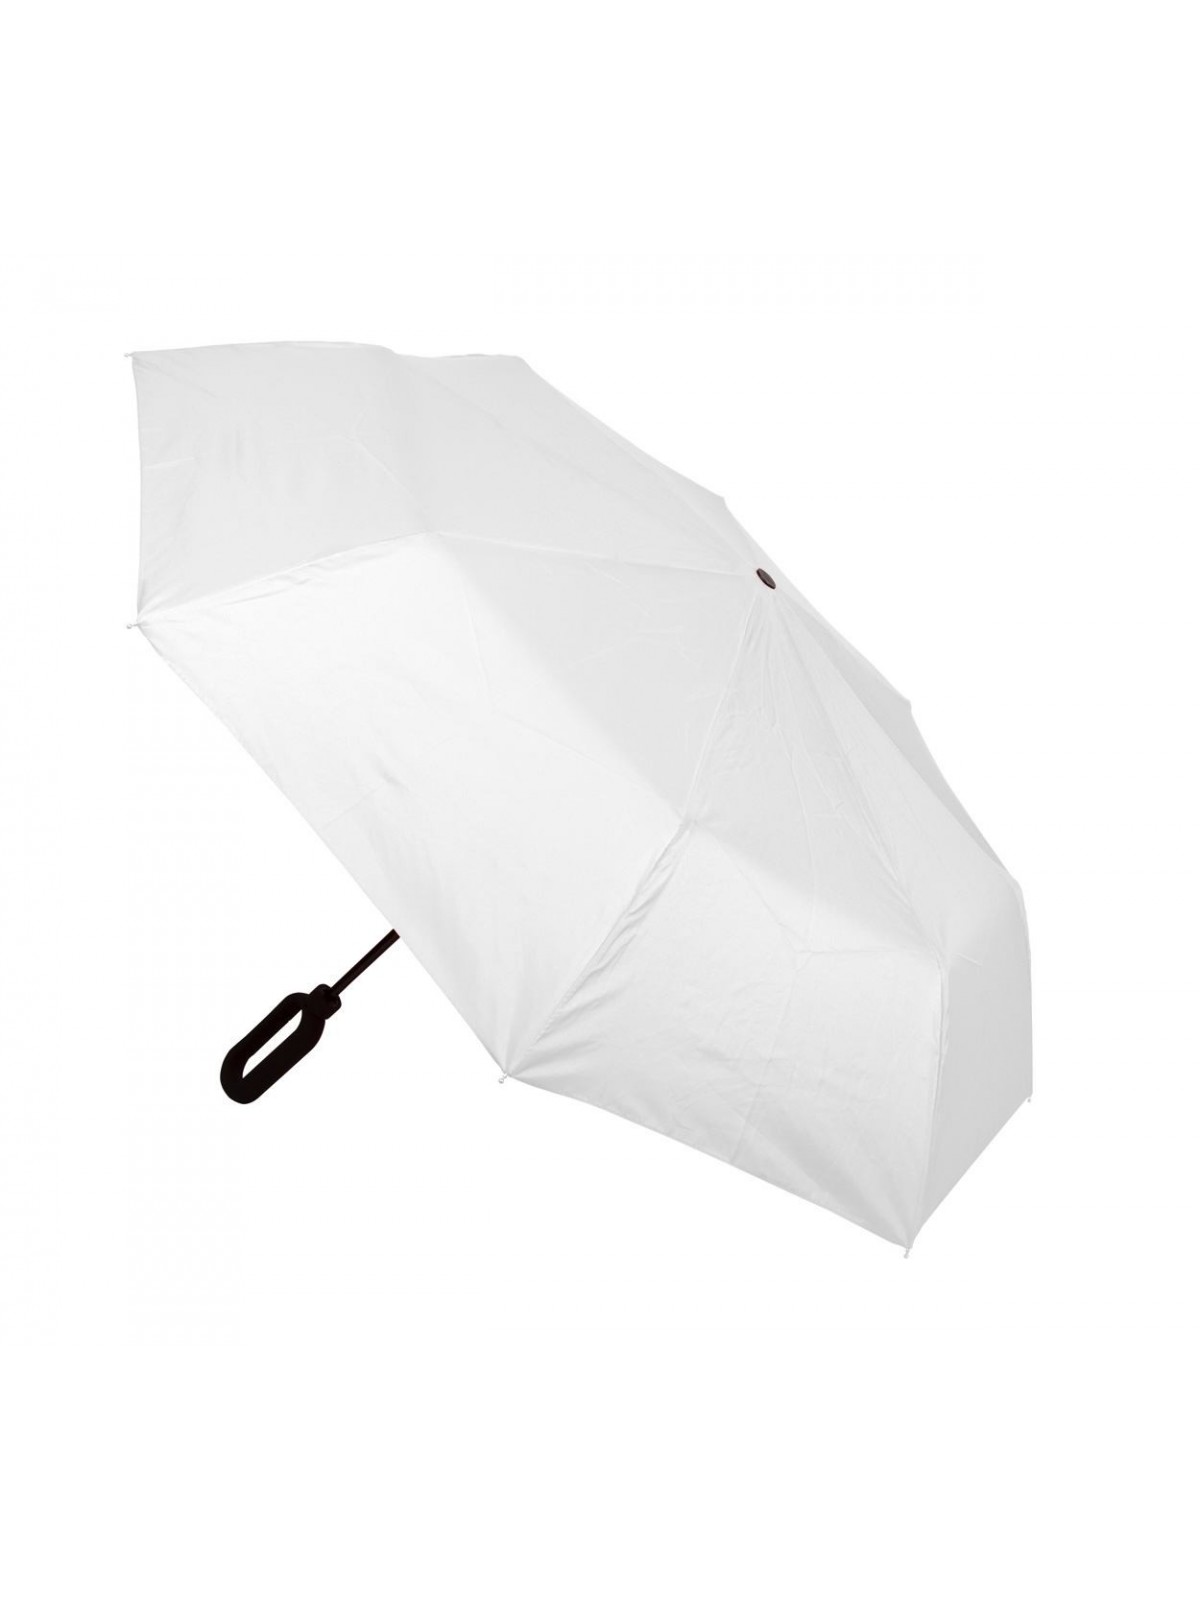 10-416 Parapluie personnalisé anti-tempête personnalisé